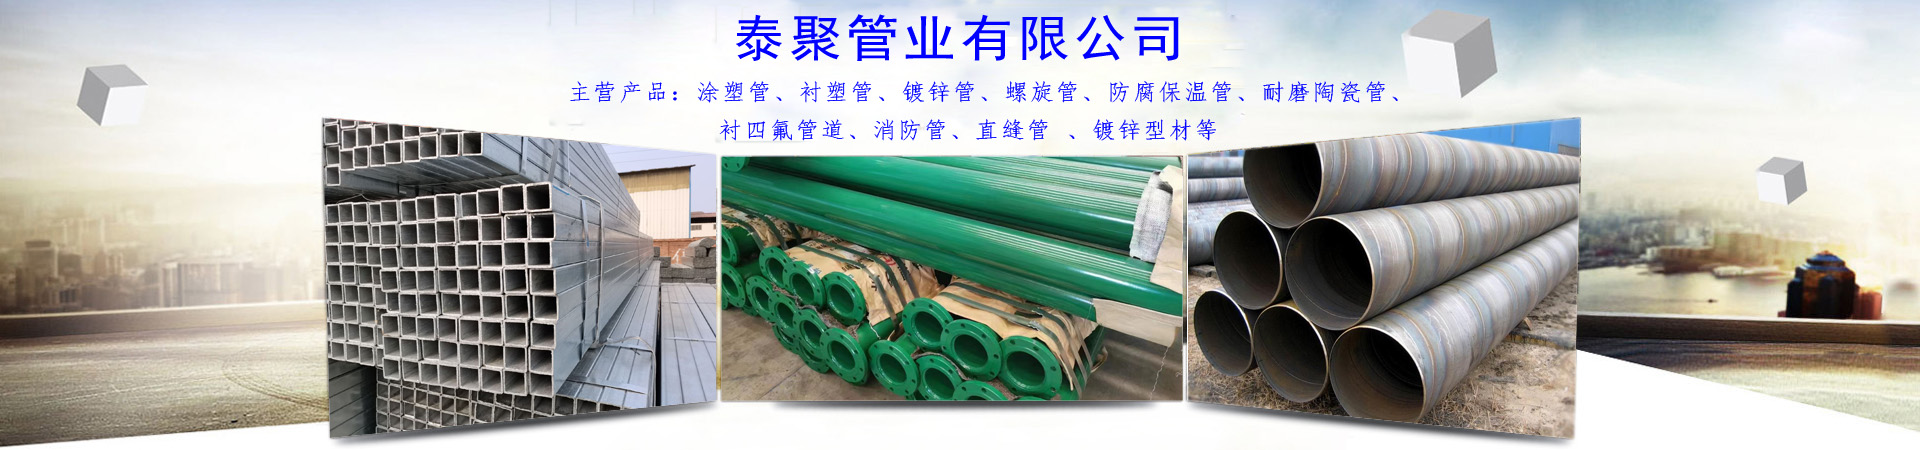 耐磨陶瓷管、亳州本地耐磨陶瓷管、亳州、亳州耐磨陶瓷管